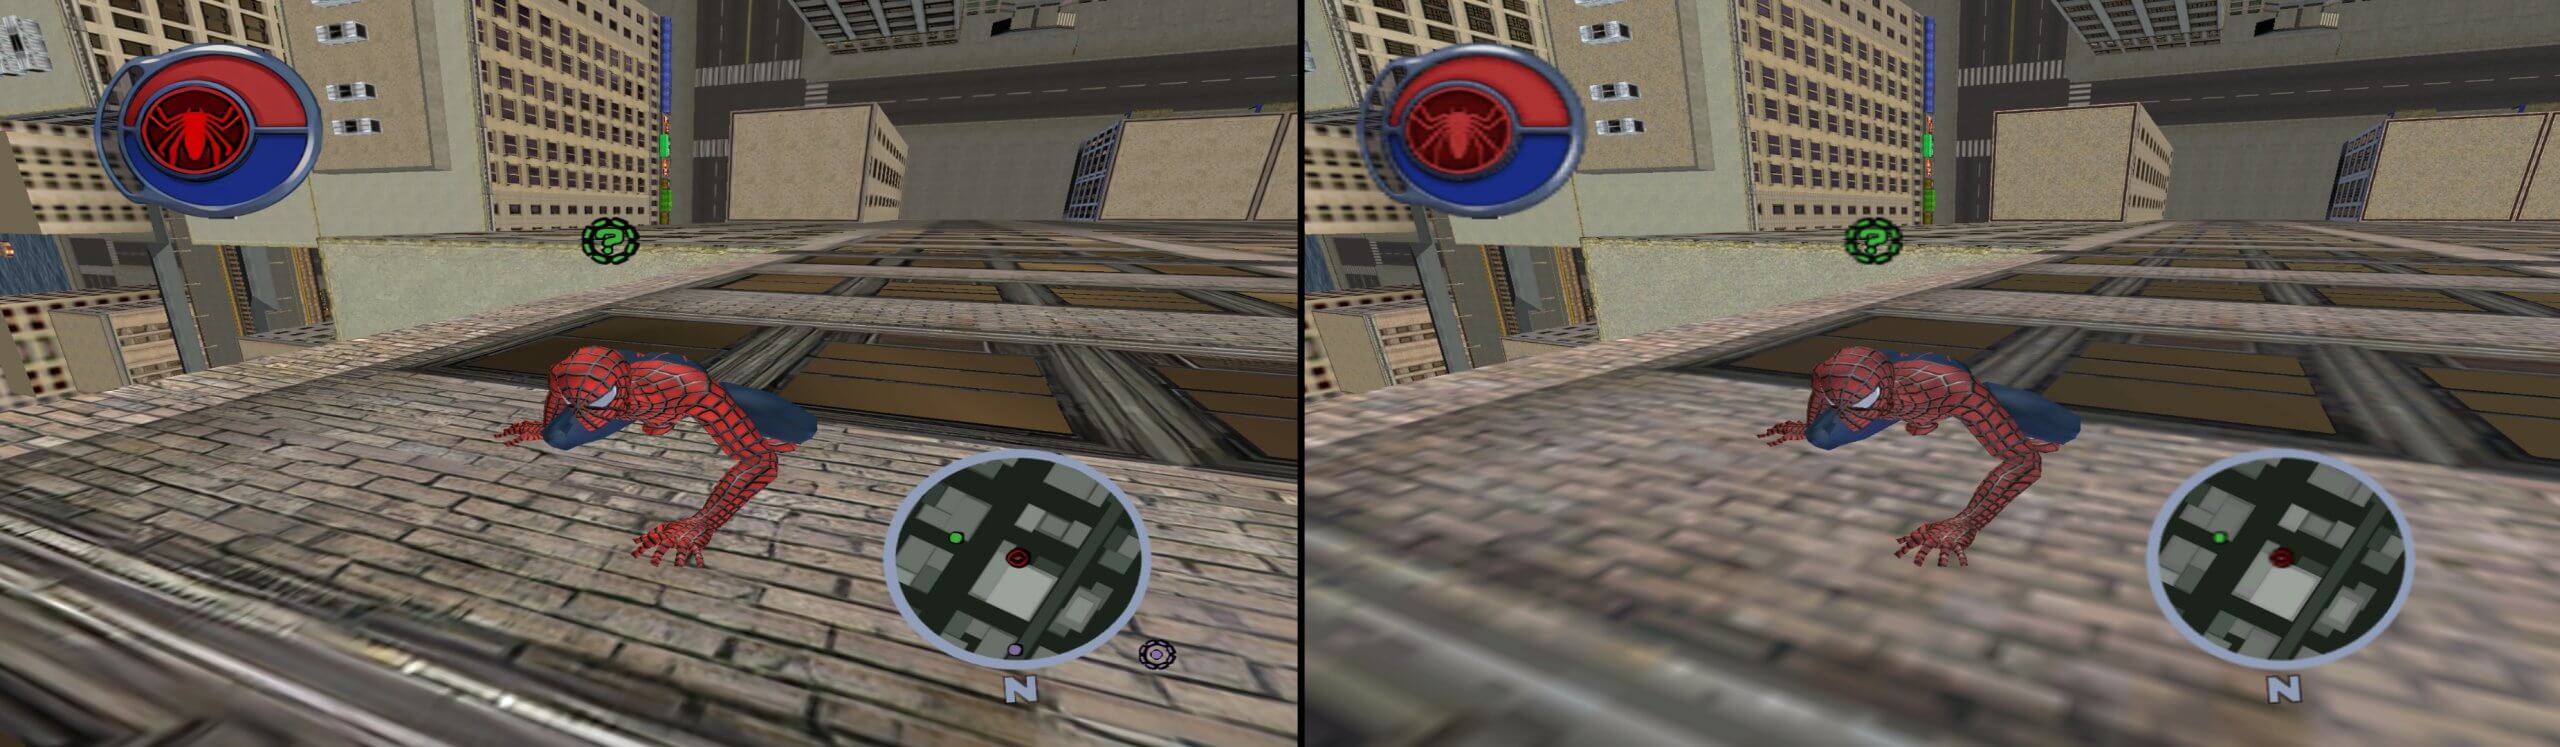 老版《蜘蛛侠2》推出画质翻新MOD 全面提升贴图材质